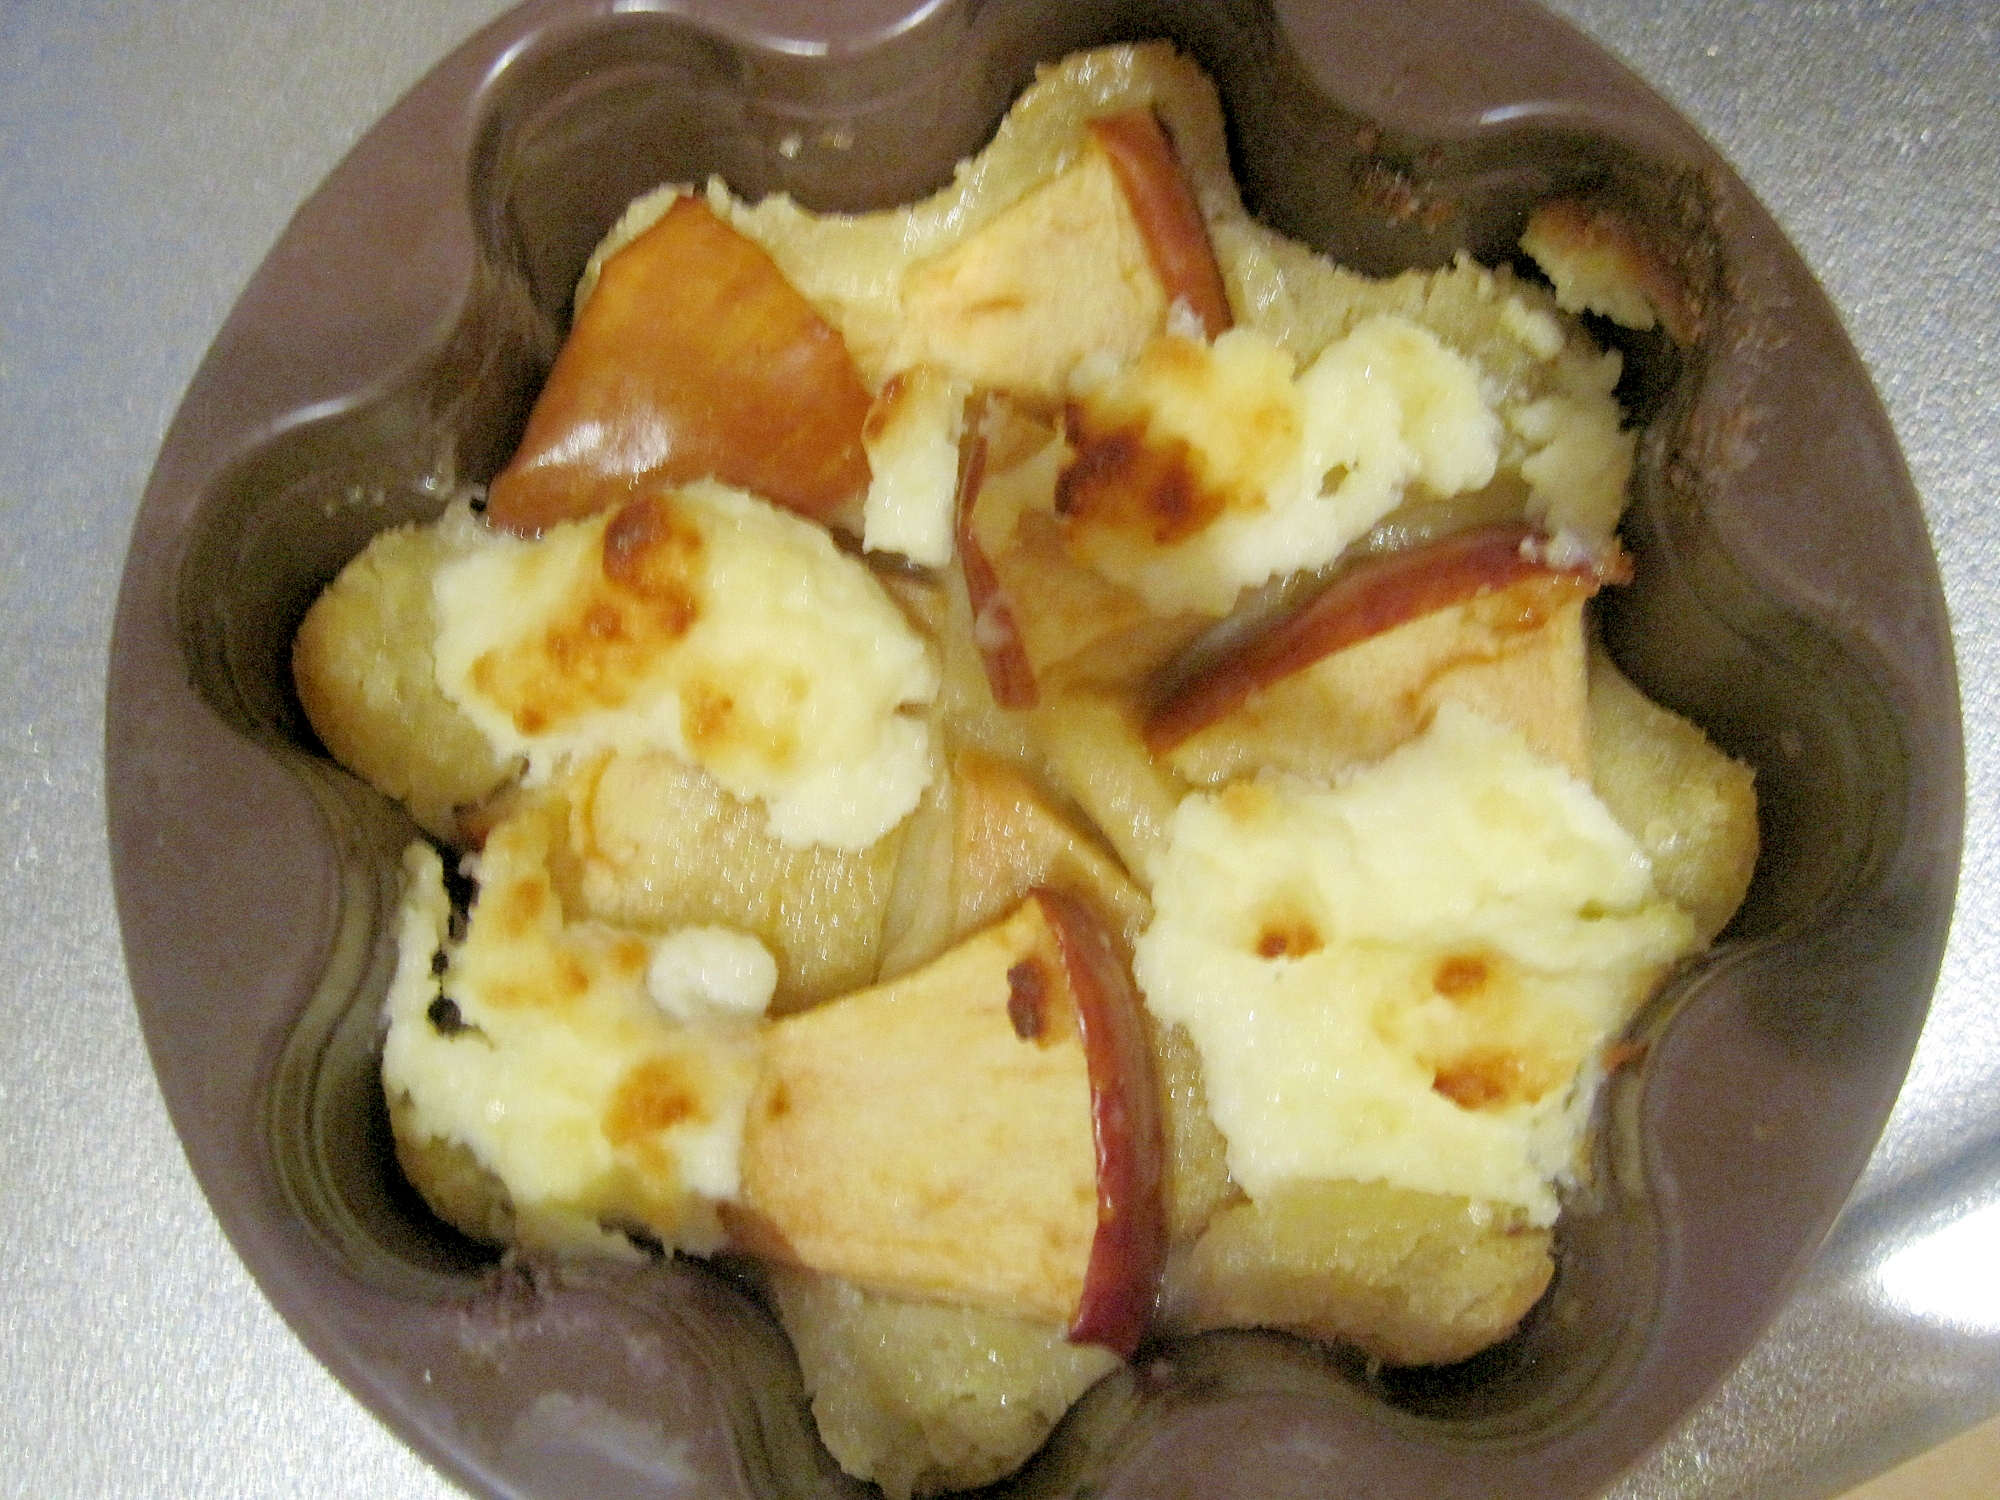 コンプリート 冷凍 パイシート りんご クリームチーズ サイエンス ダイエット シニア ライト